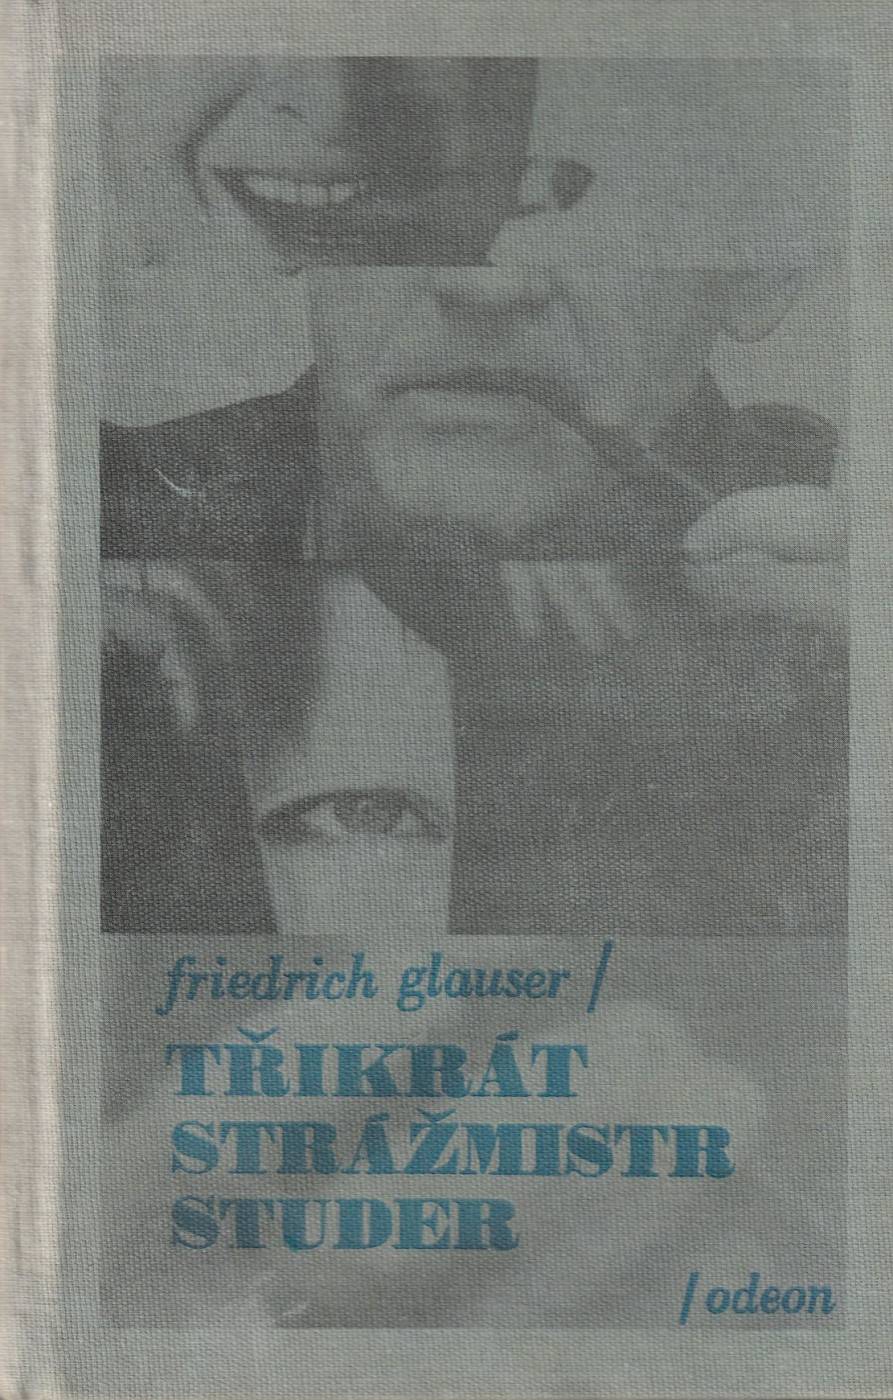 Glauser, Friedrich – Třikrát strážmistr Studer